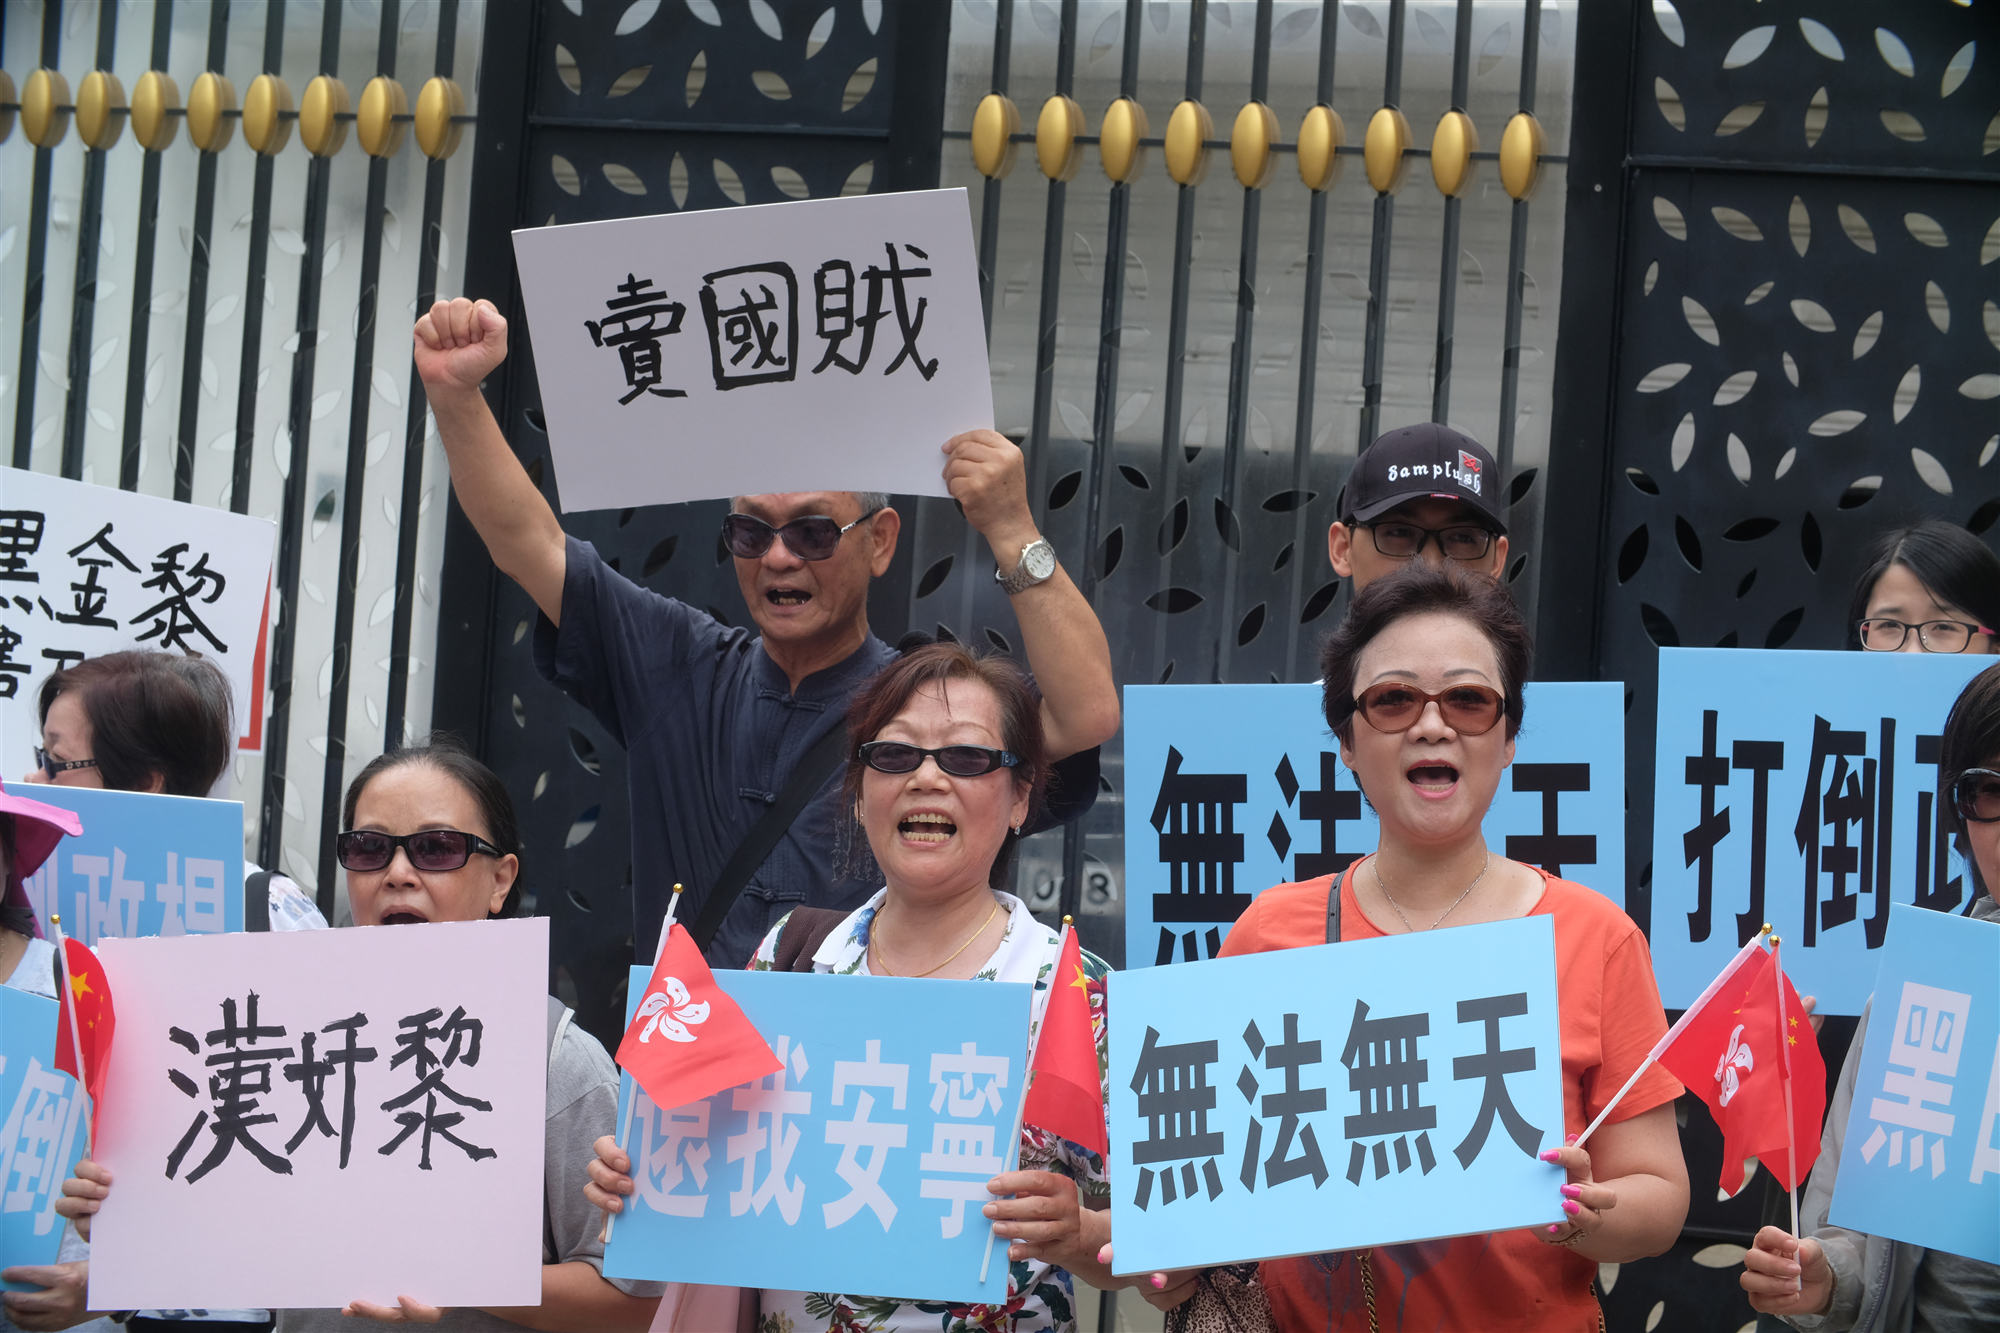 黎智英宅外市民抗議 怒斥「賣國賊」搞亂香港